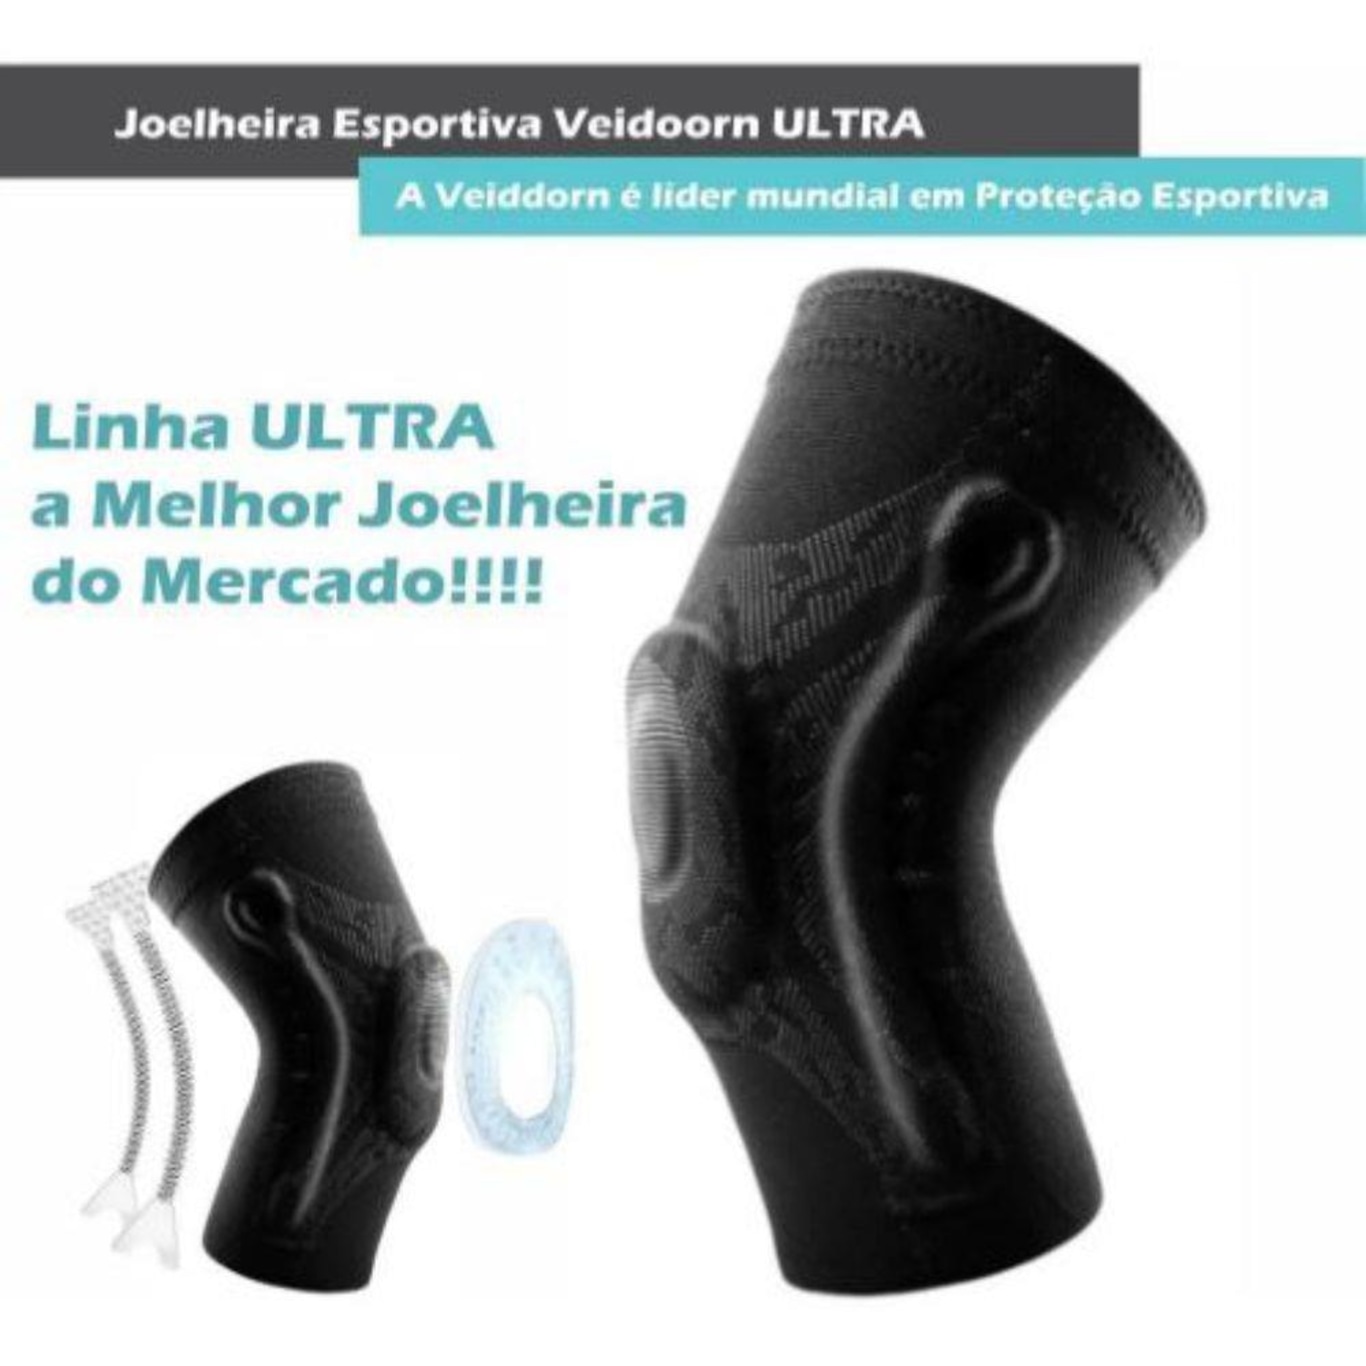 Joelheiras E Faixas de Joelho Speedo - Proteção Esportiva - Compre Já